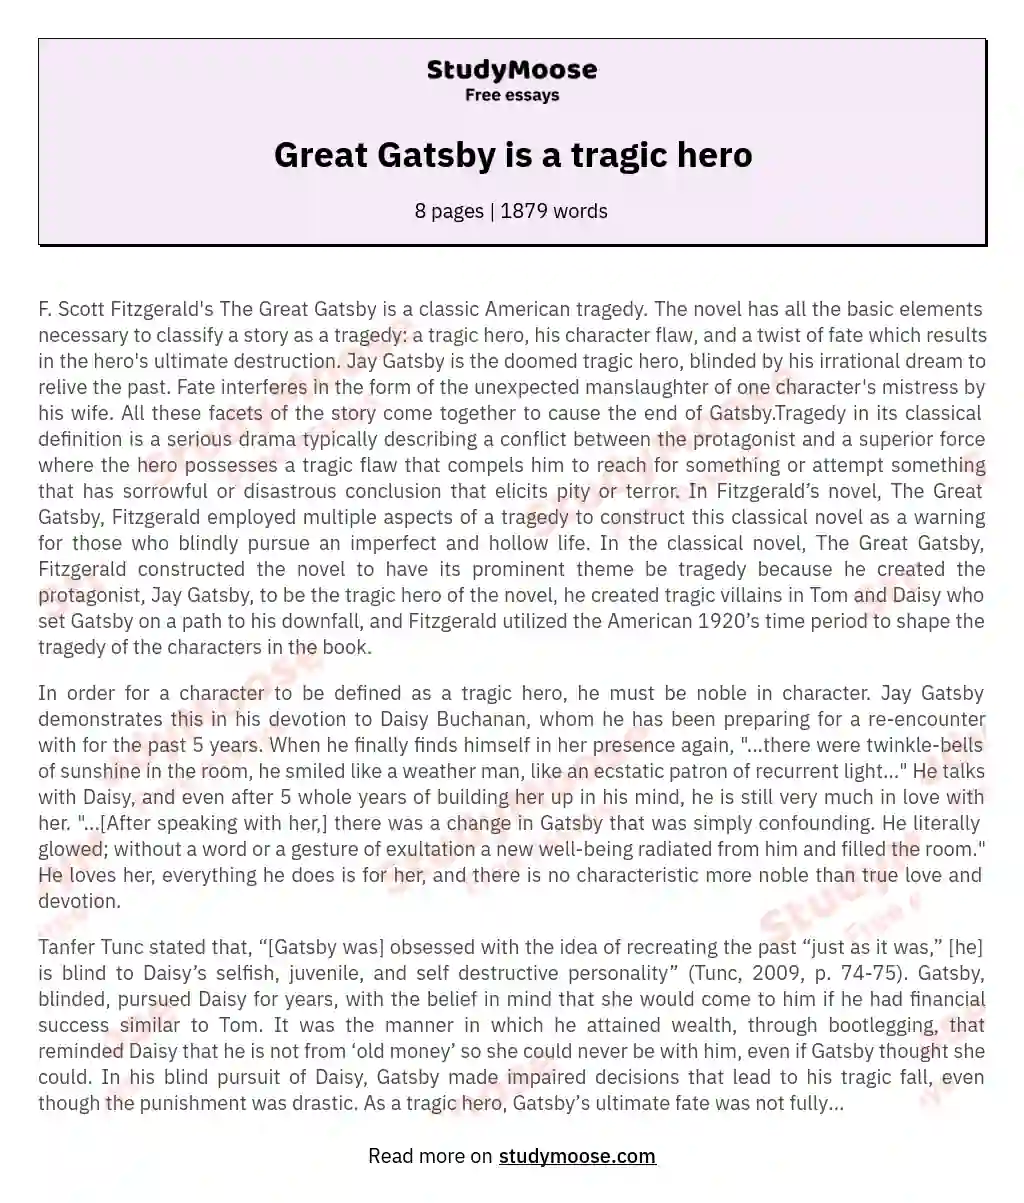 Great Gatsby is a tragic hero essay